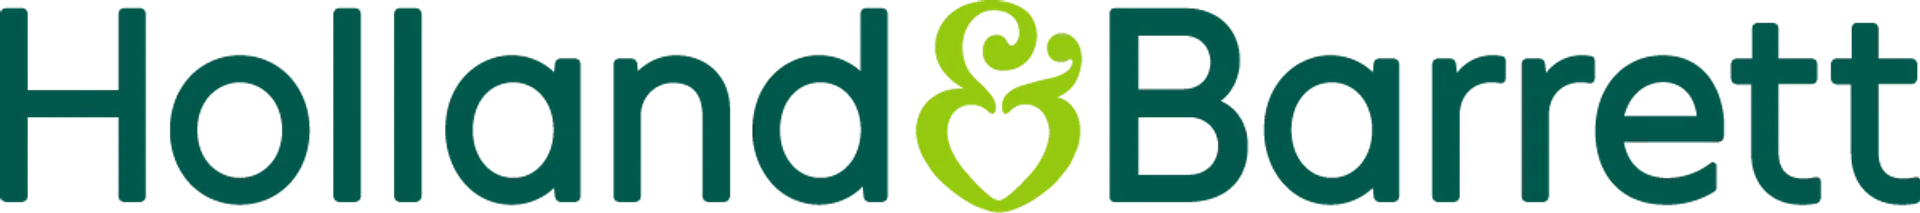 HOLLAND & BARRETT logo. Current catalogue